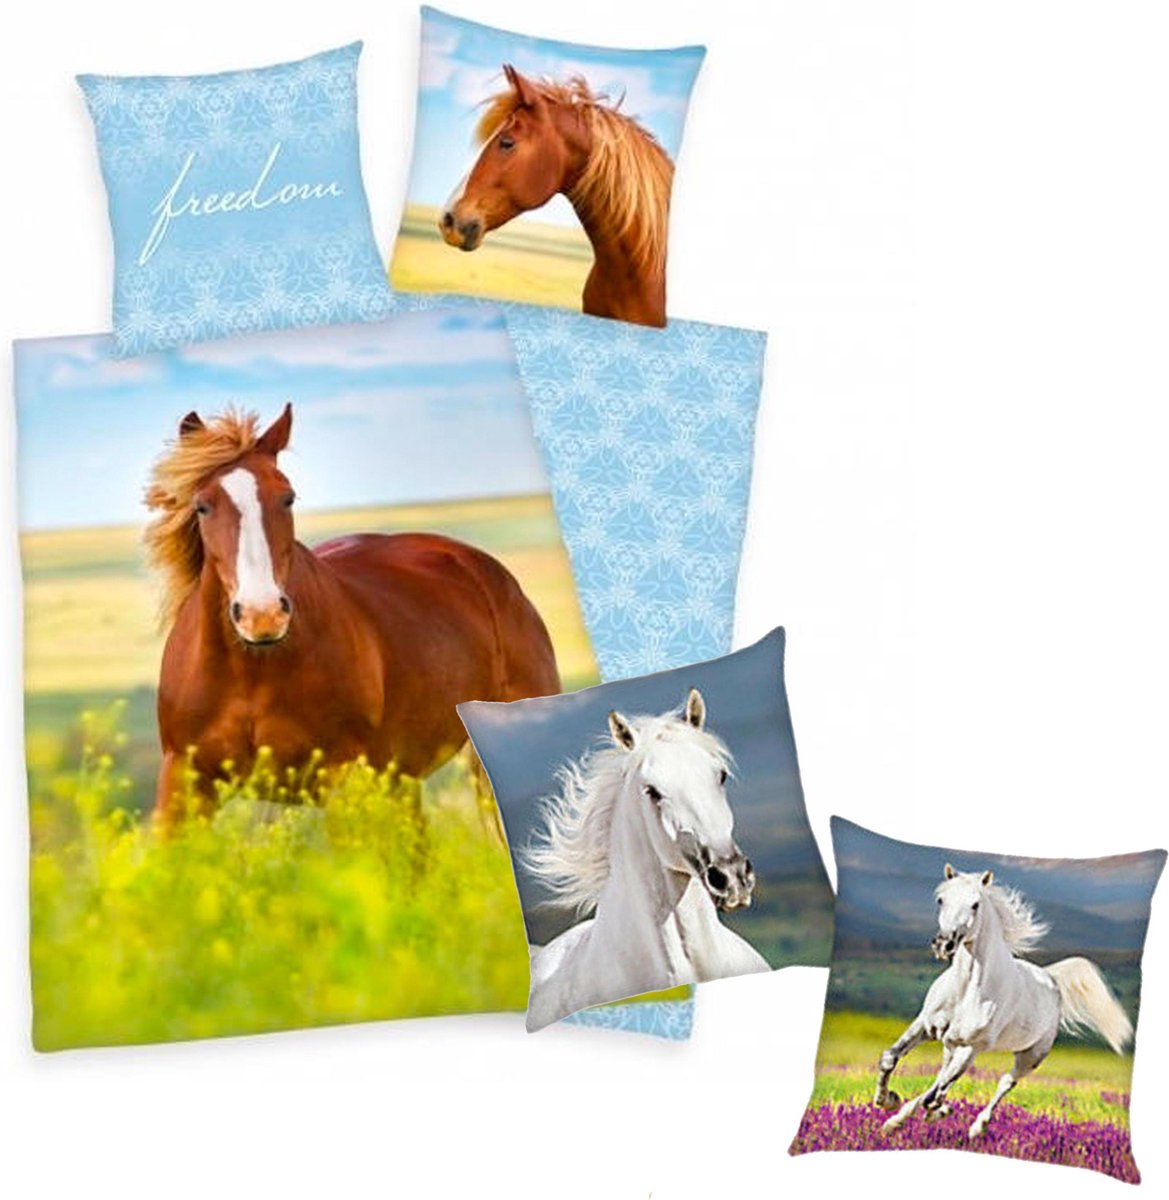 Dekbedovertrek Paard, 140 x 200 cm, Paard in bloemenwei , Dekbed eenpersoons - incl. sierkussen wit paard 40x40 cm